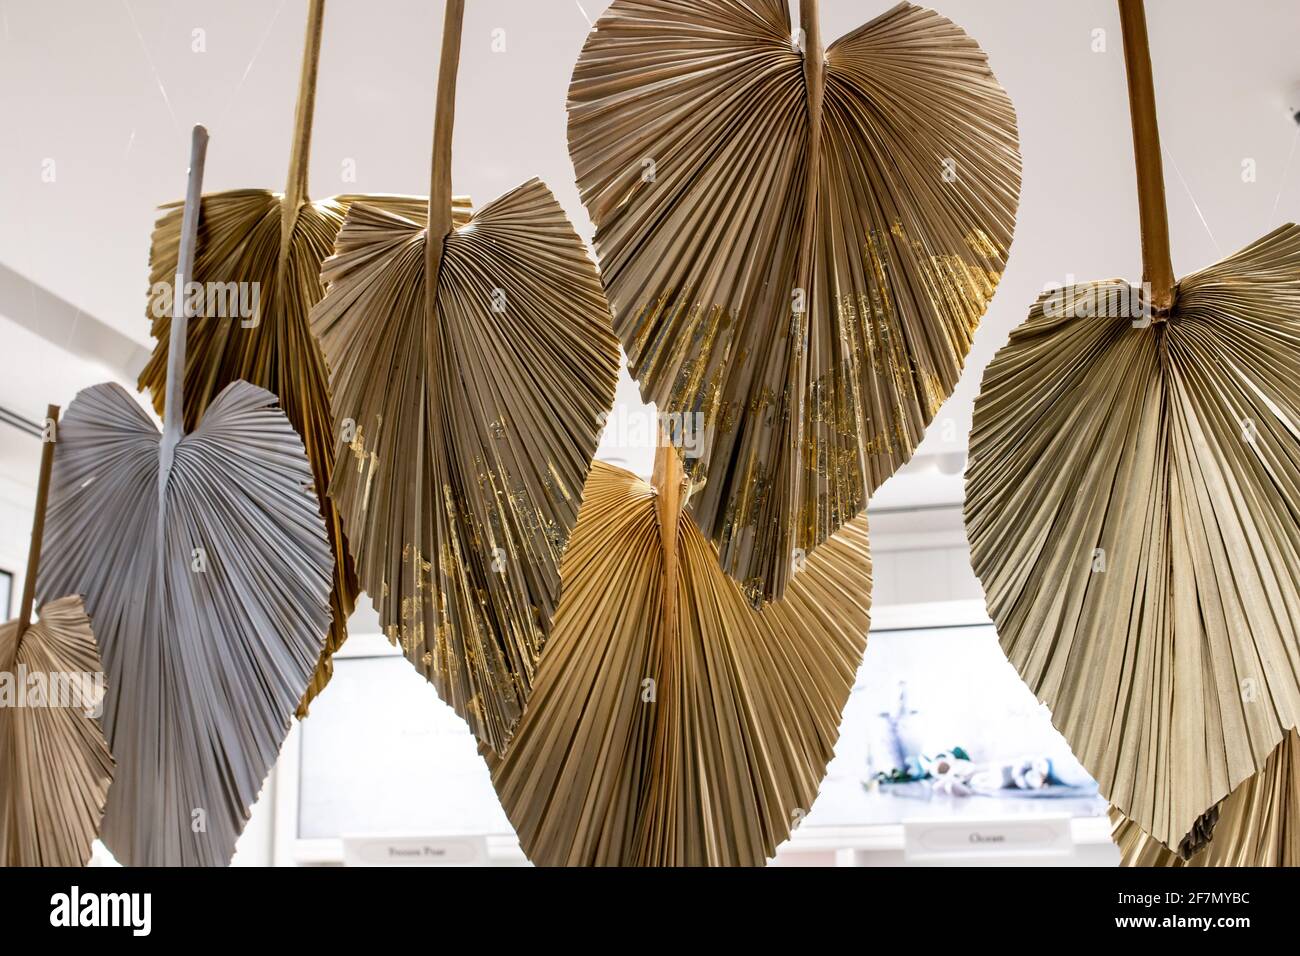 Una collezione di foglie di palma d'oro dipinte coperte di foglia d'oro sfaldante pende dal soffitto di una boutique in un centro commerciale a Londra, Canada. Foto Stock